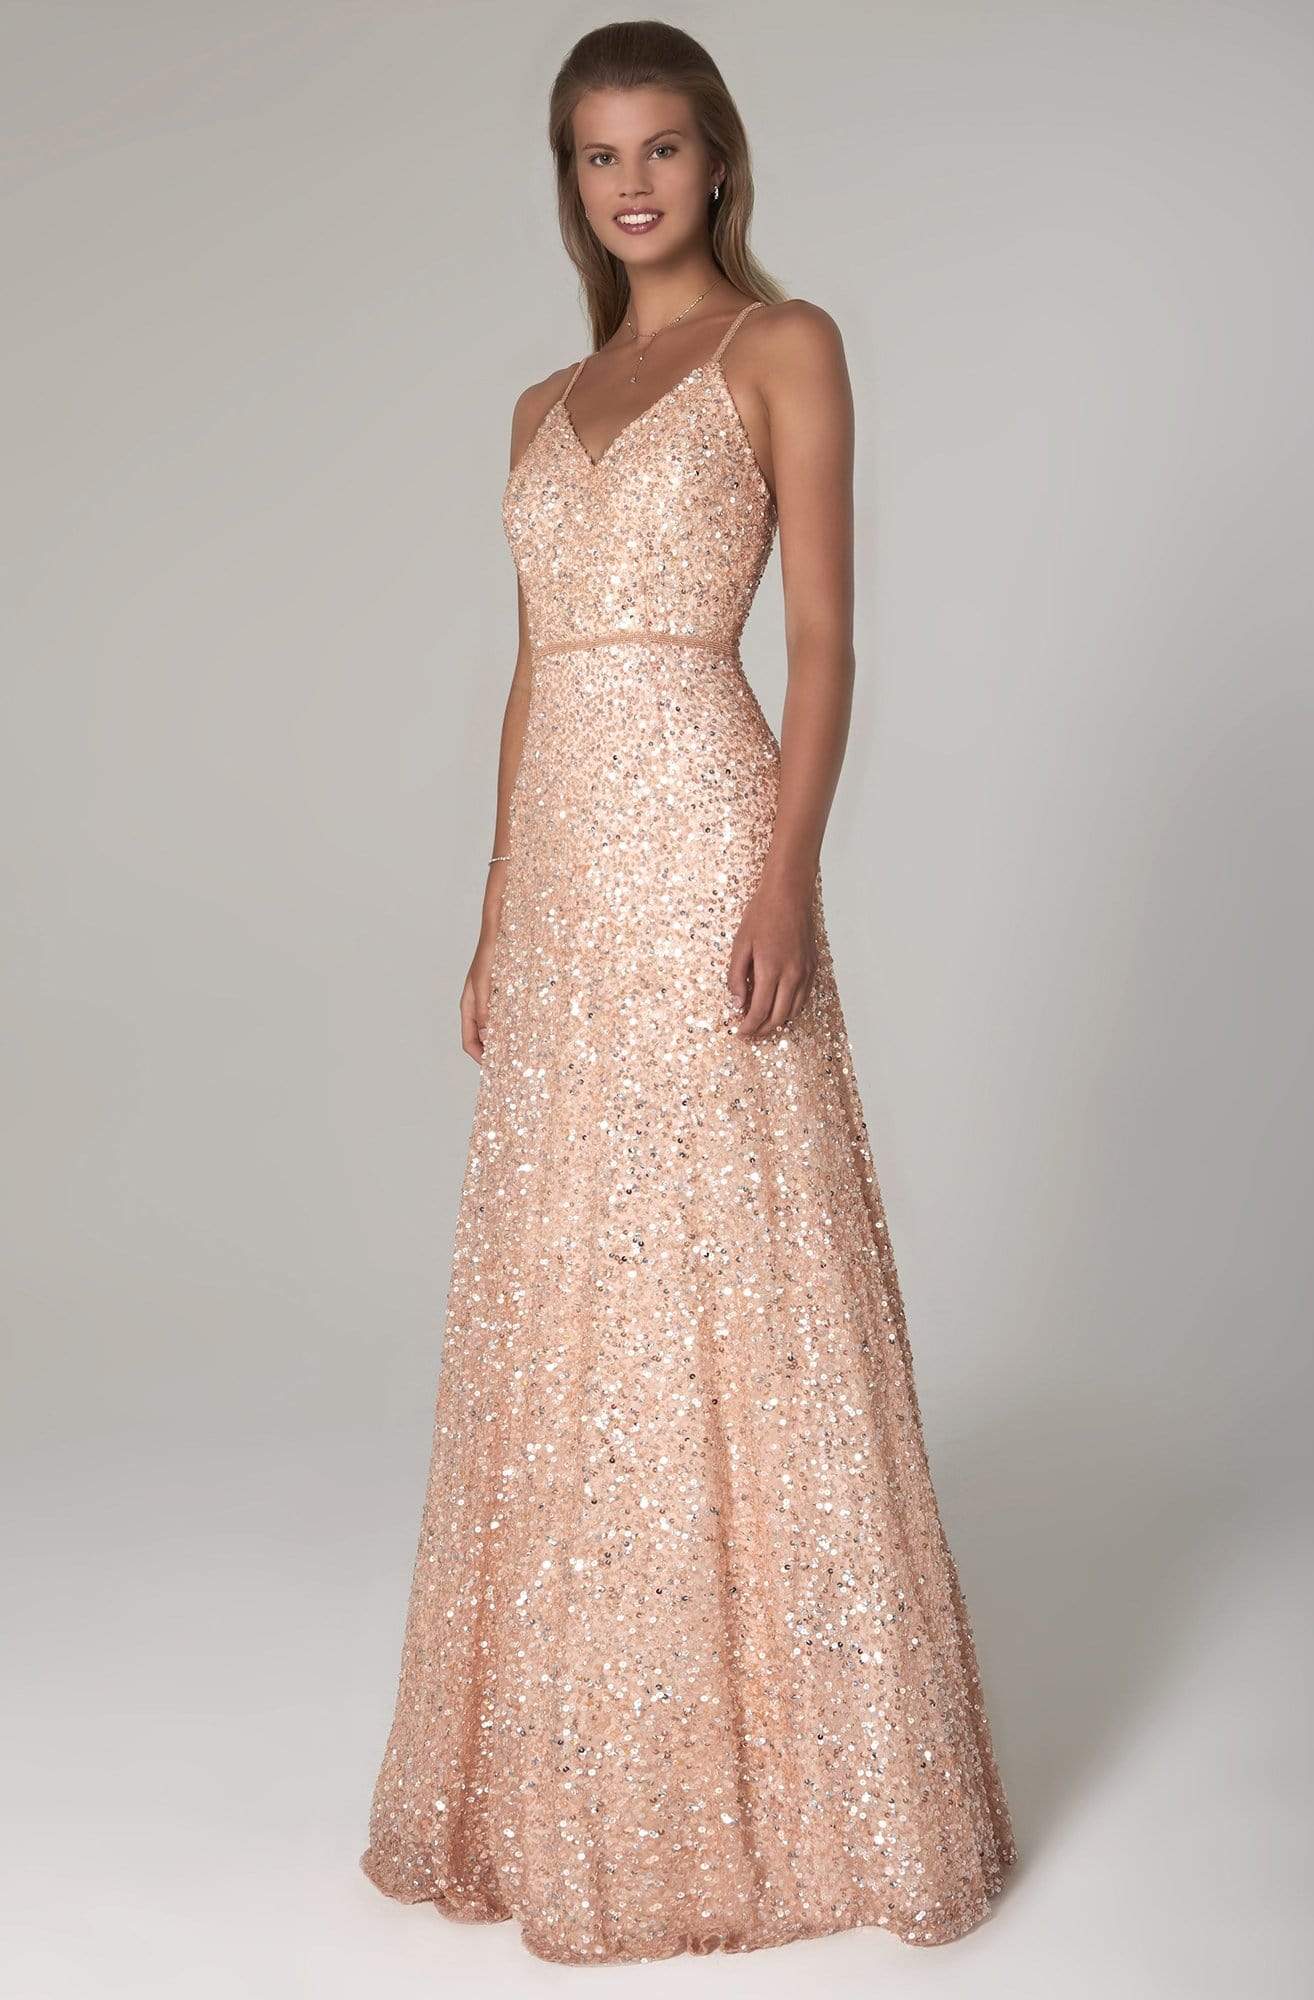 SCALA - 60109 Embellished V-neck A-line Dress Prom Dresses 00 / Blush